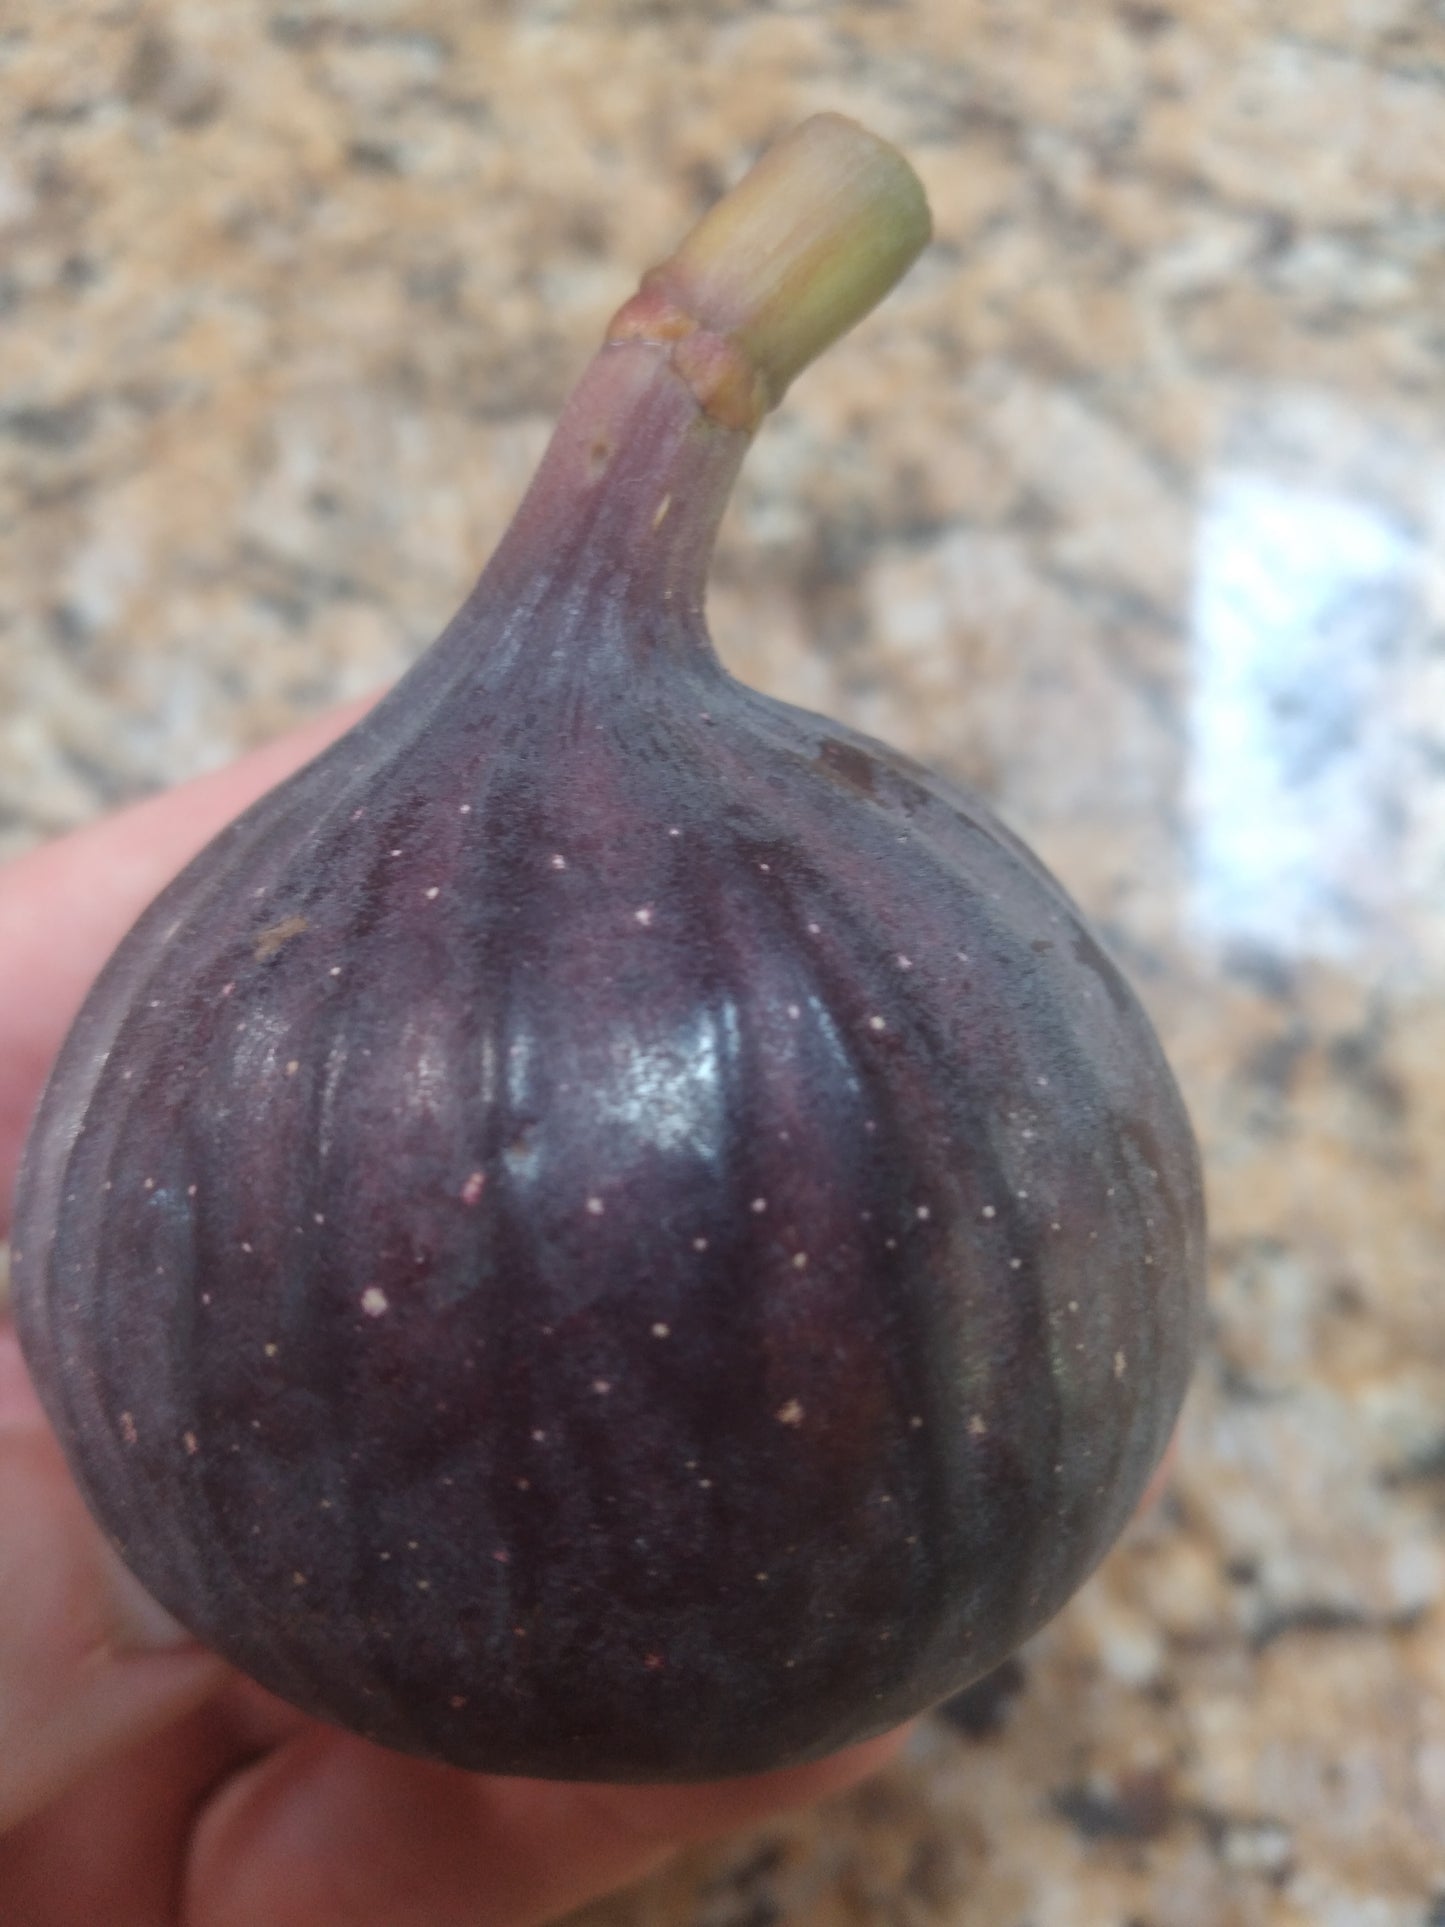 Violette de Sollies FIg (VdS)- 2 Cuttings - Large Tasty Purple Figs